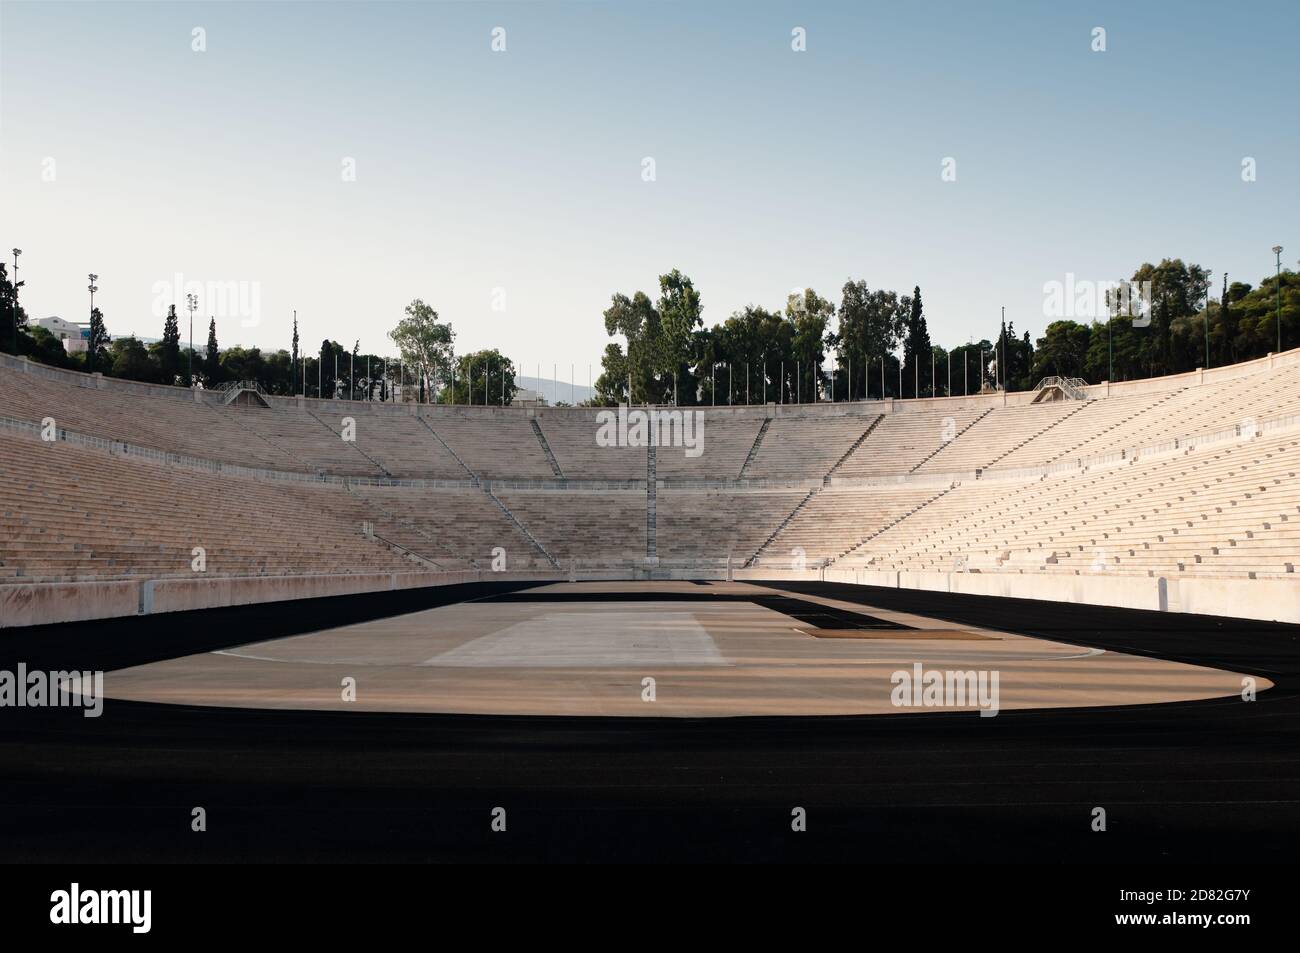 C'est un immense stade en forme de U, en marbre fin à Athènes, en Grèce. Situé à l'endroit où l'ancien stade panathénaïque était autrefois, était le fu Banque D'Images